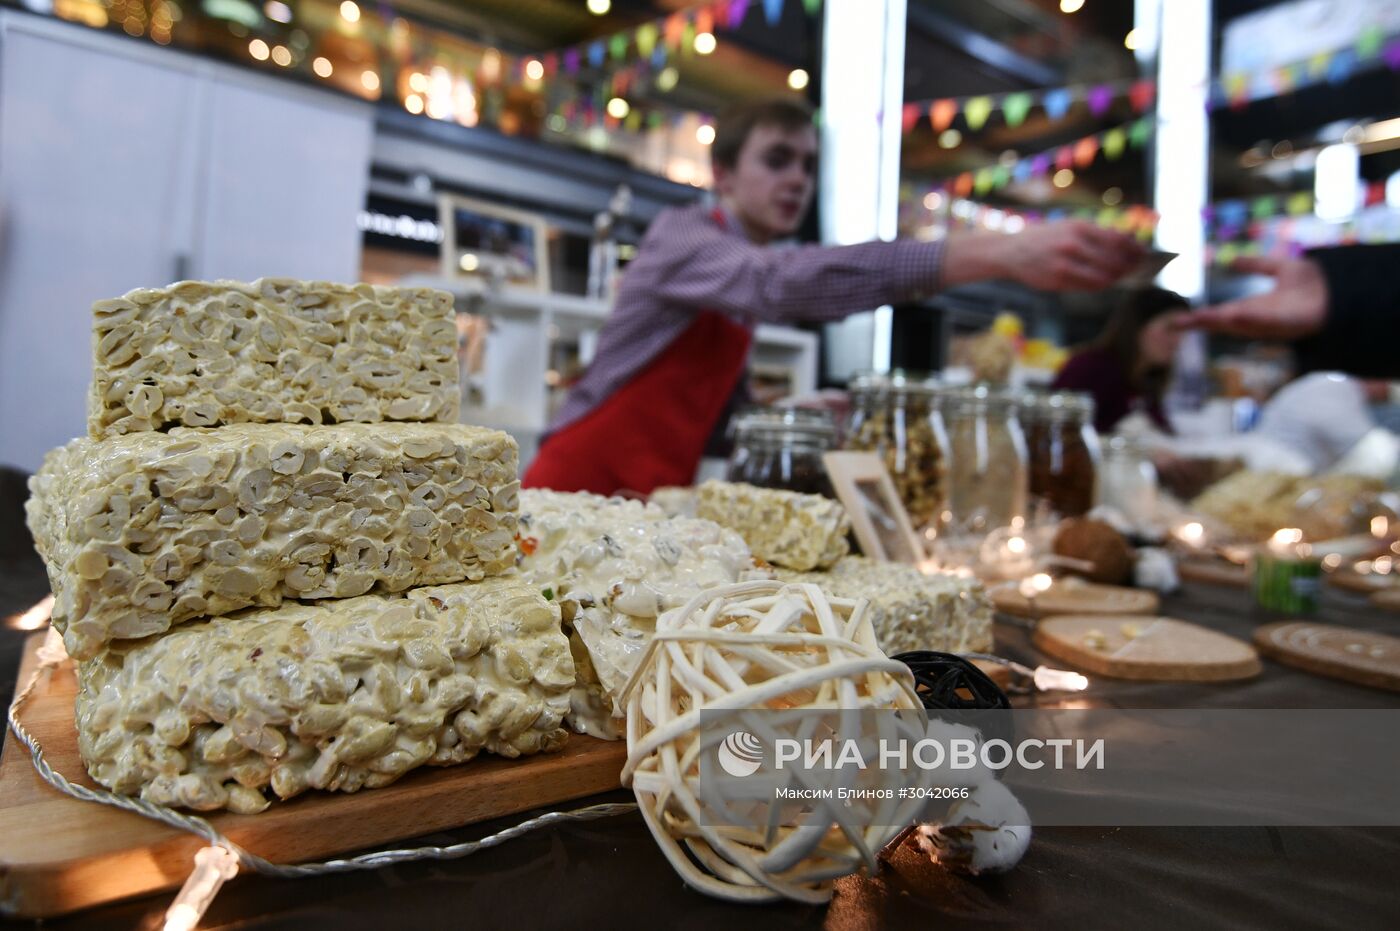 Фестиваль сыра на Манежной площади